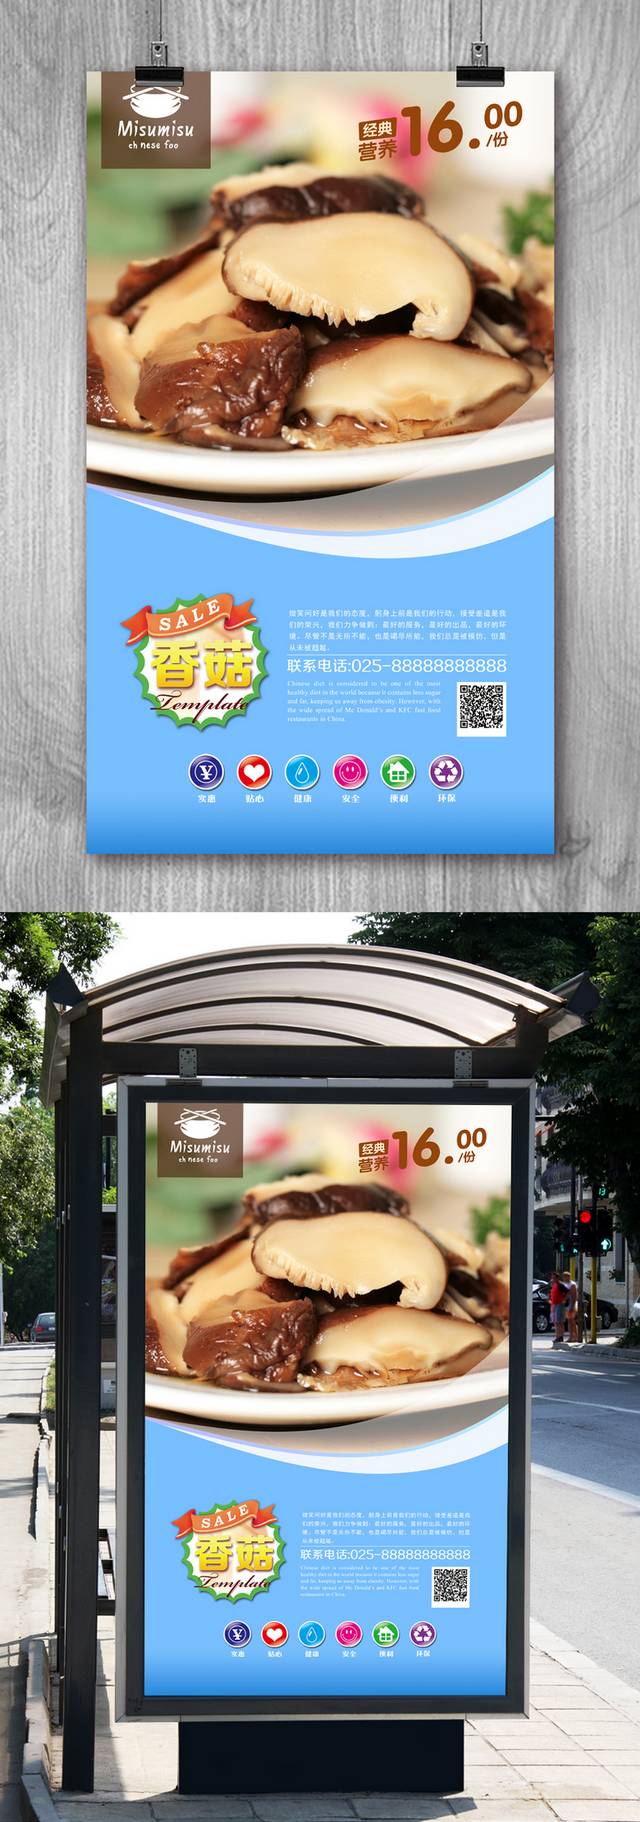 清新香菇宣传海报设计psd